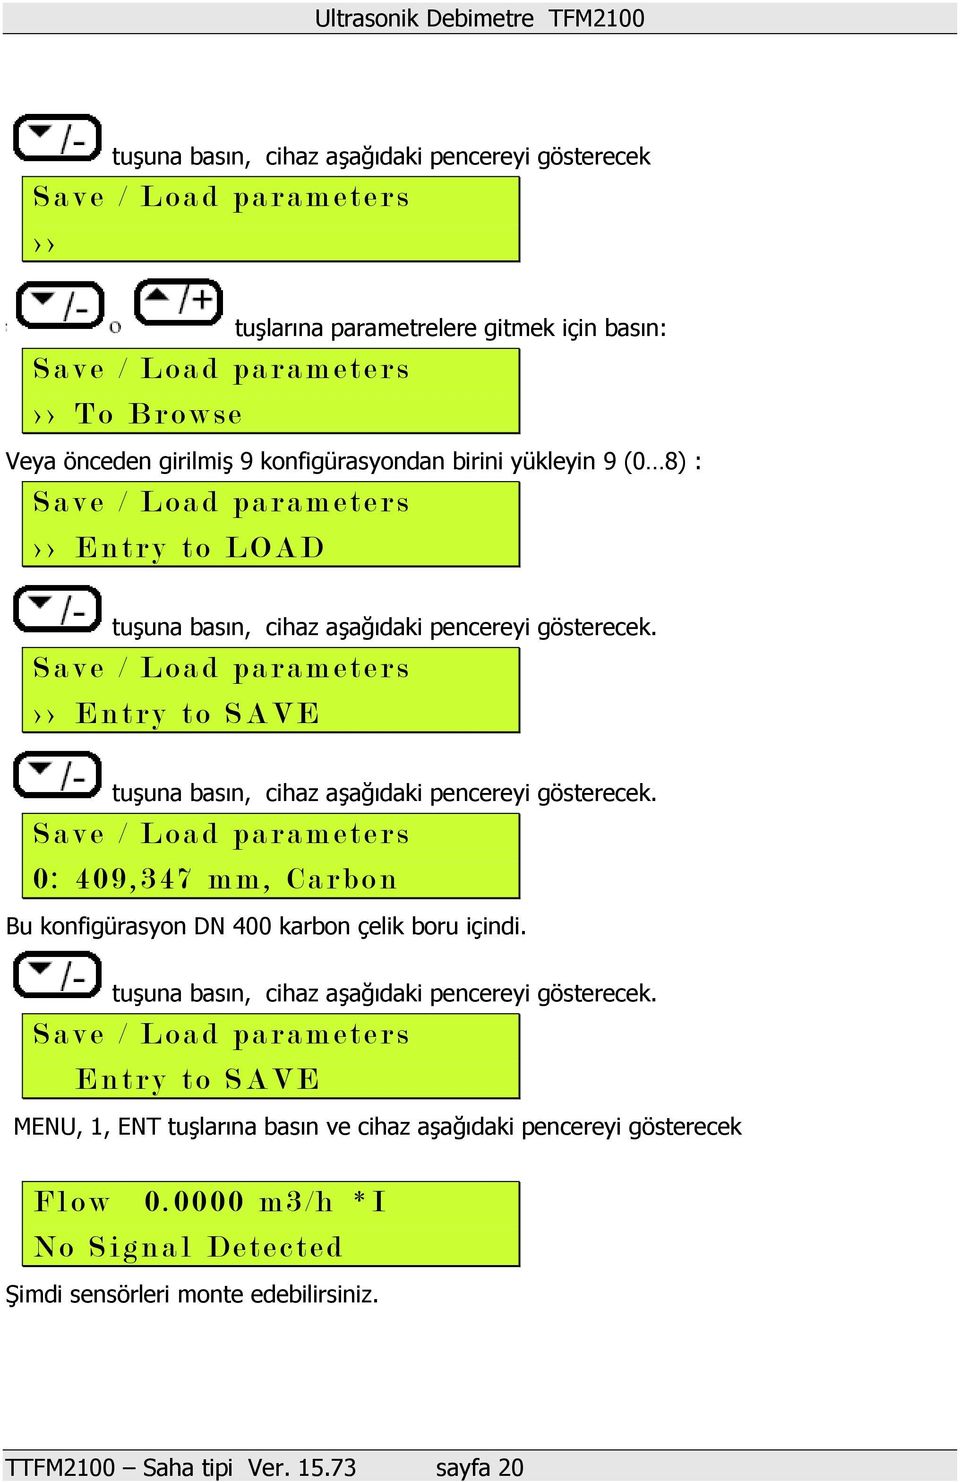 S a v e / Load parameters > > E n t r y t o S A VE tuşuna basın, cihaz aşağıdaki pencereyi gösterecek.